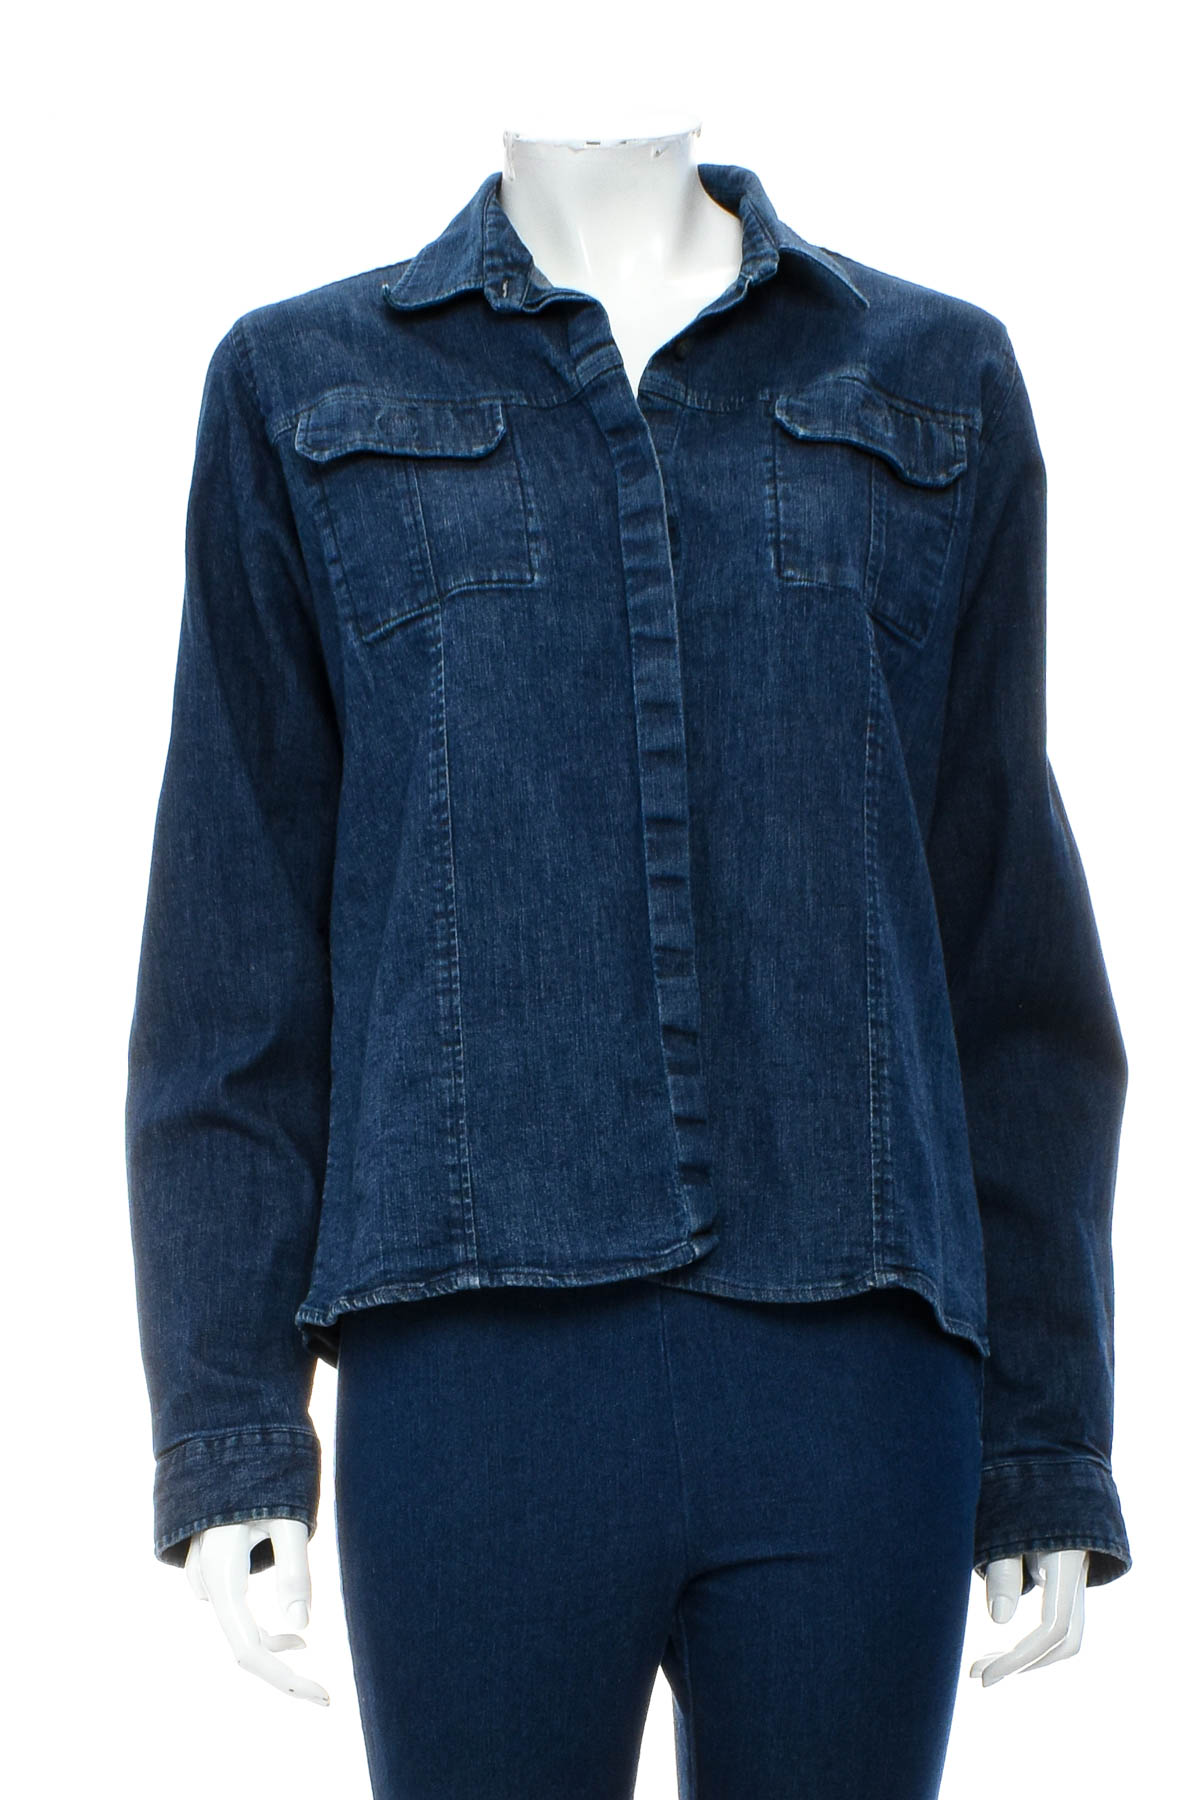 Γυναικείο τζιν πουκάμισο - American Outfitters - 0